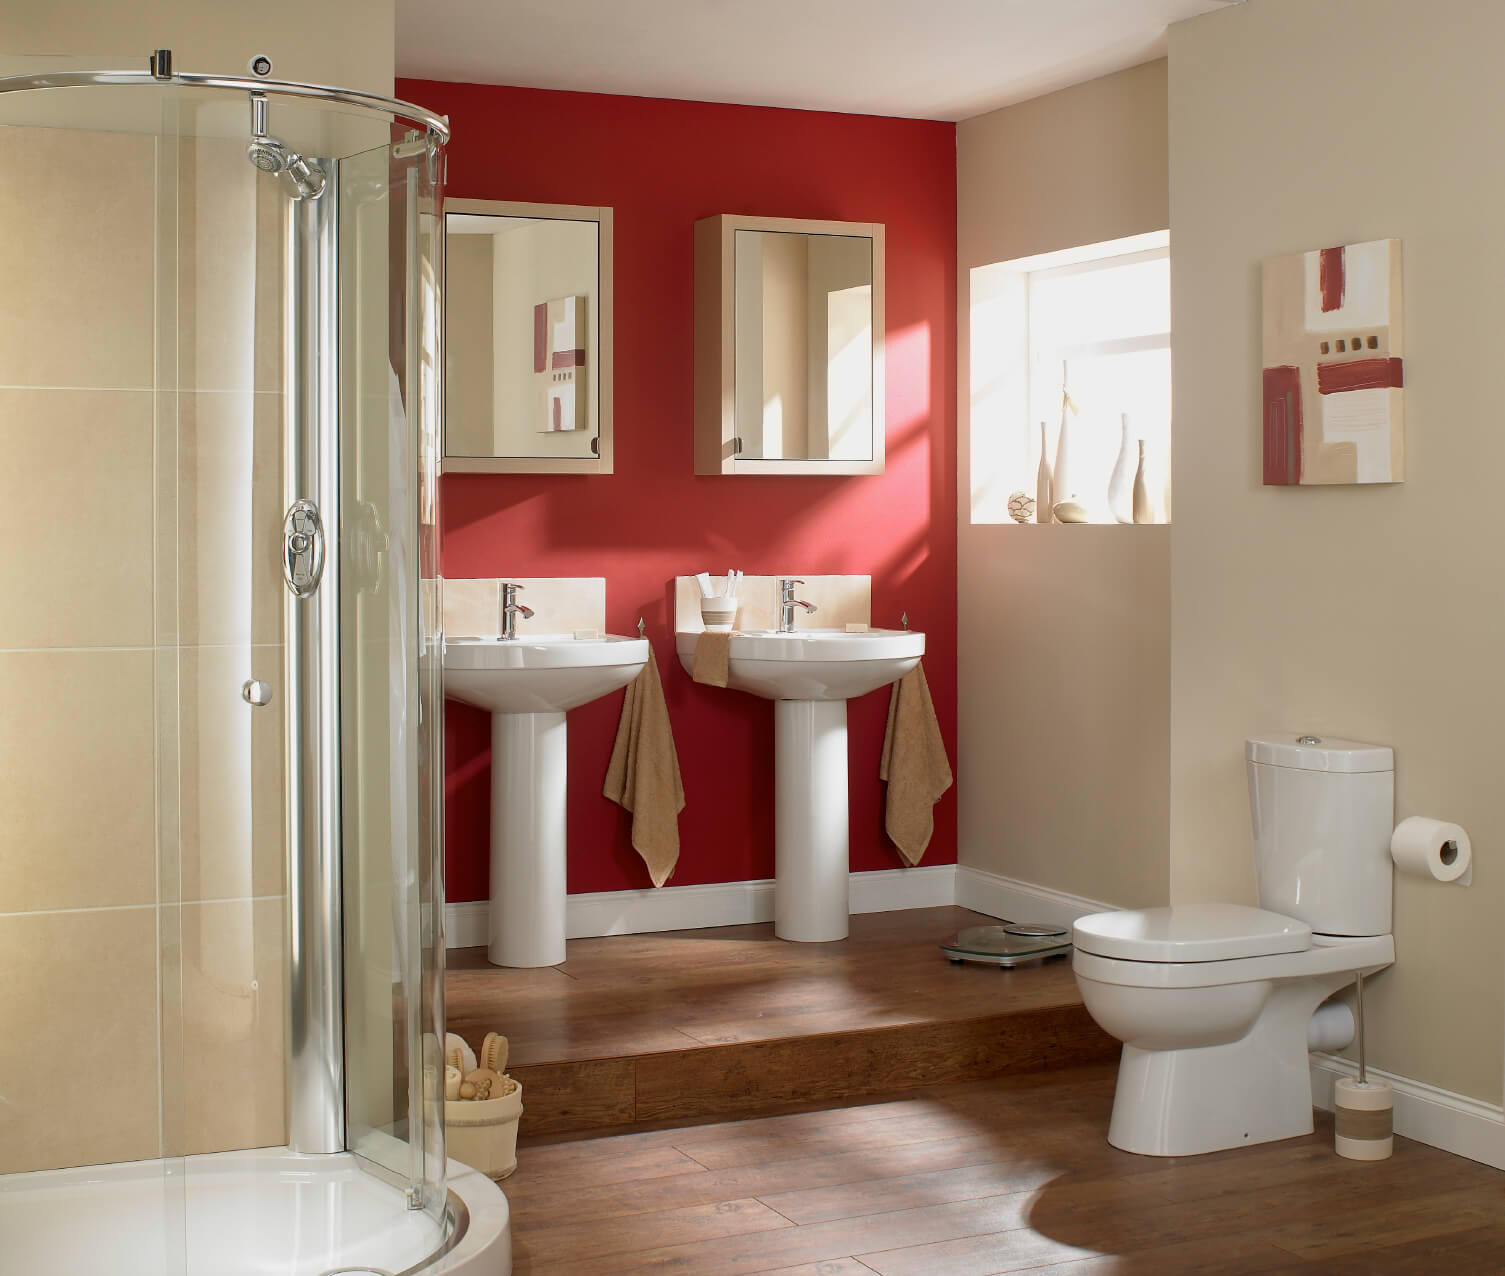 主浴室以红墙和硬木地板为特色。它还设有两个基座水槽和一间开放式淋浴房。